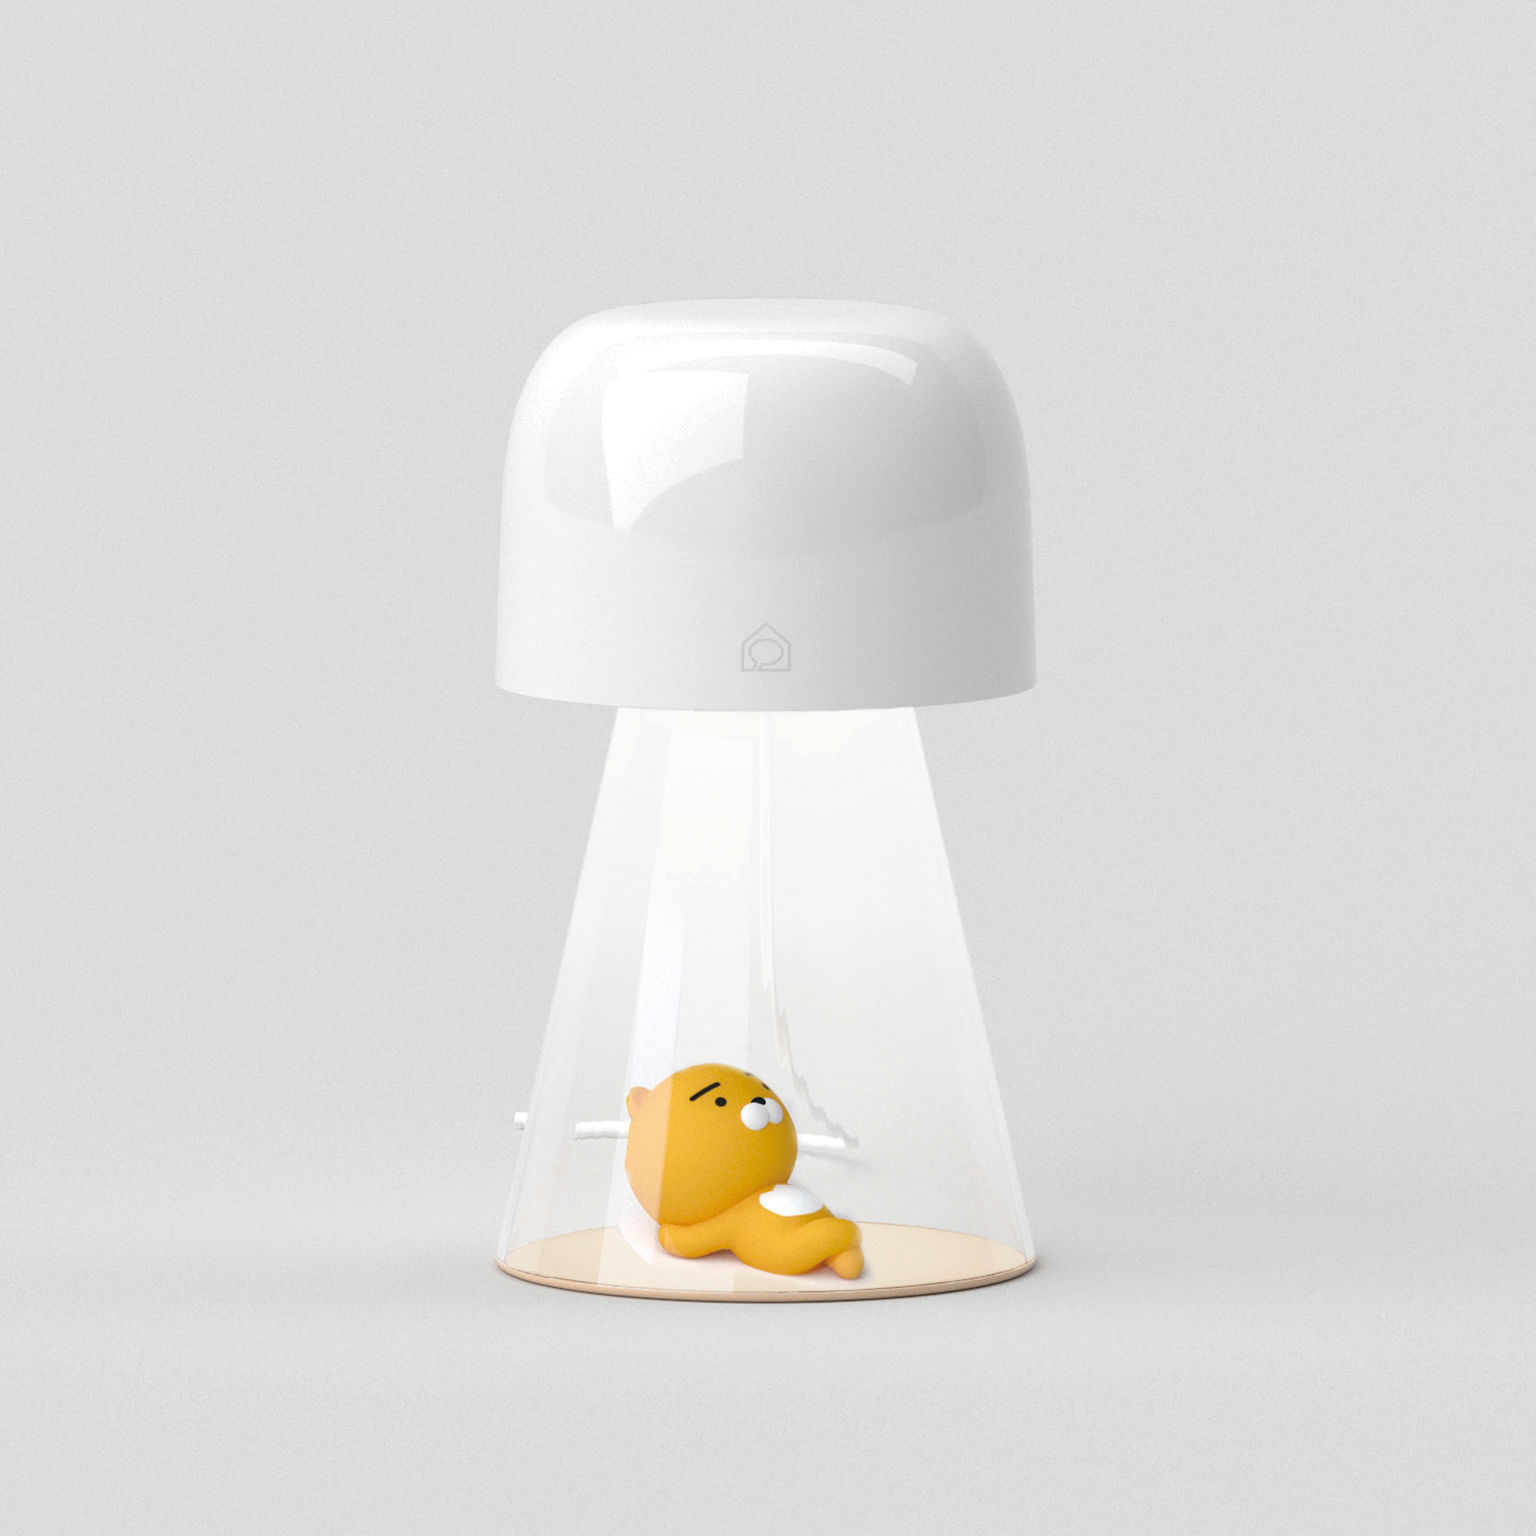 Kakao IoT Smart Lamp